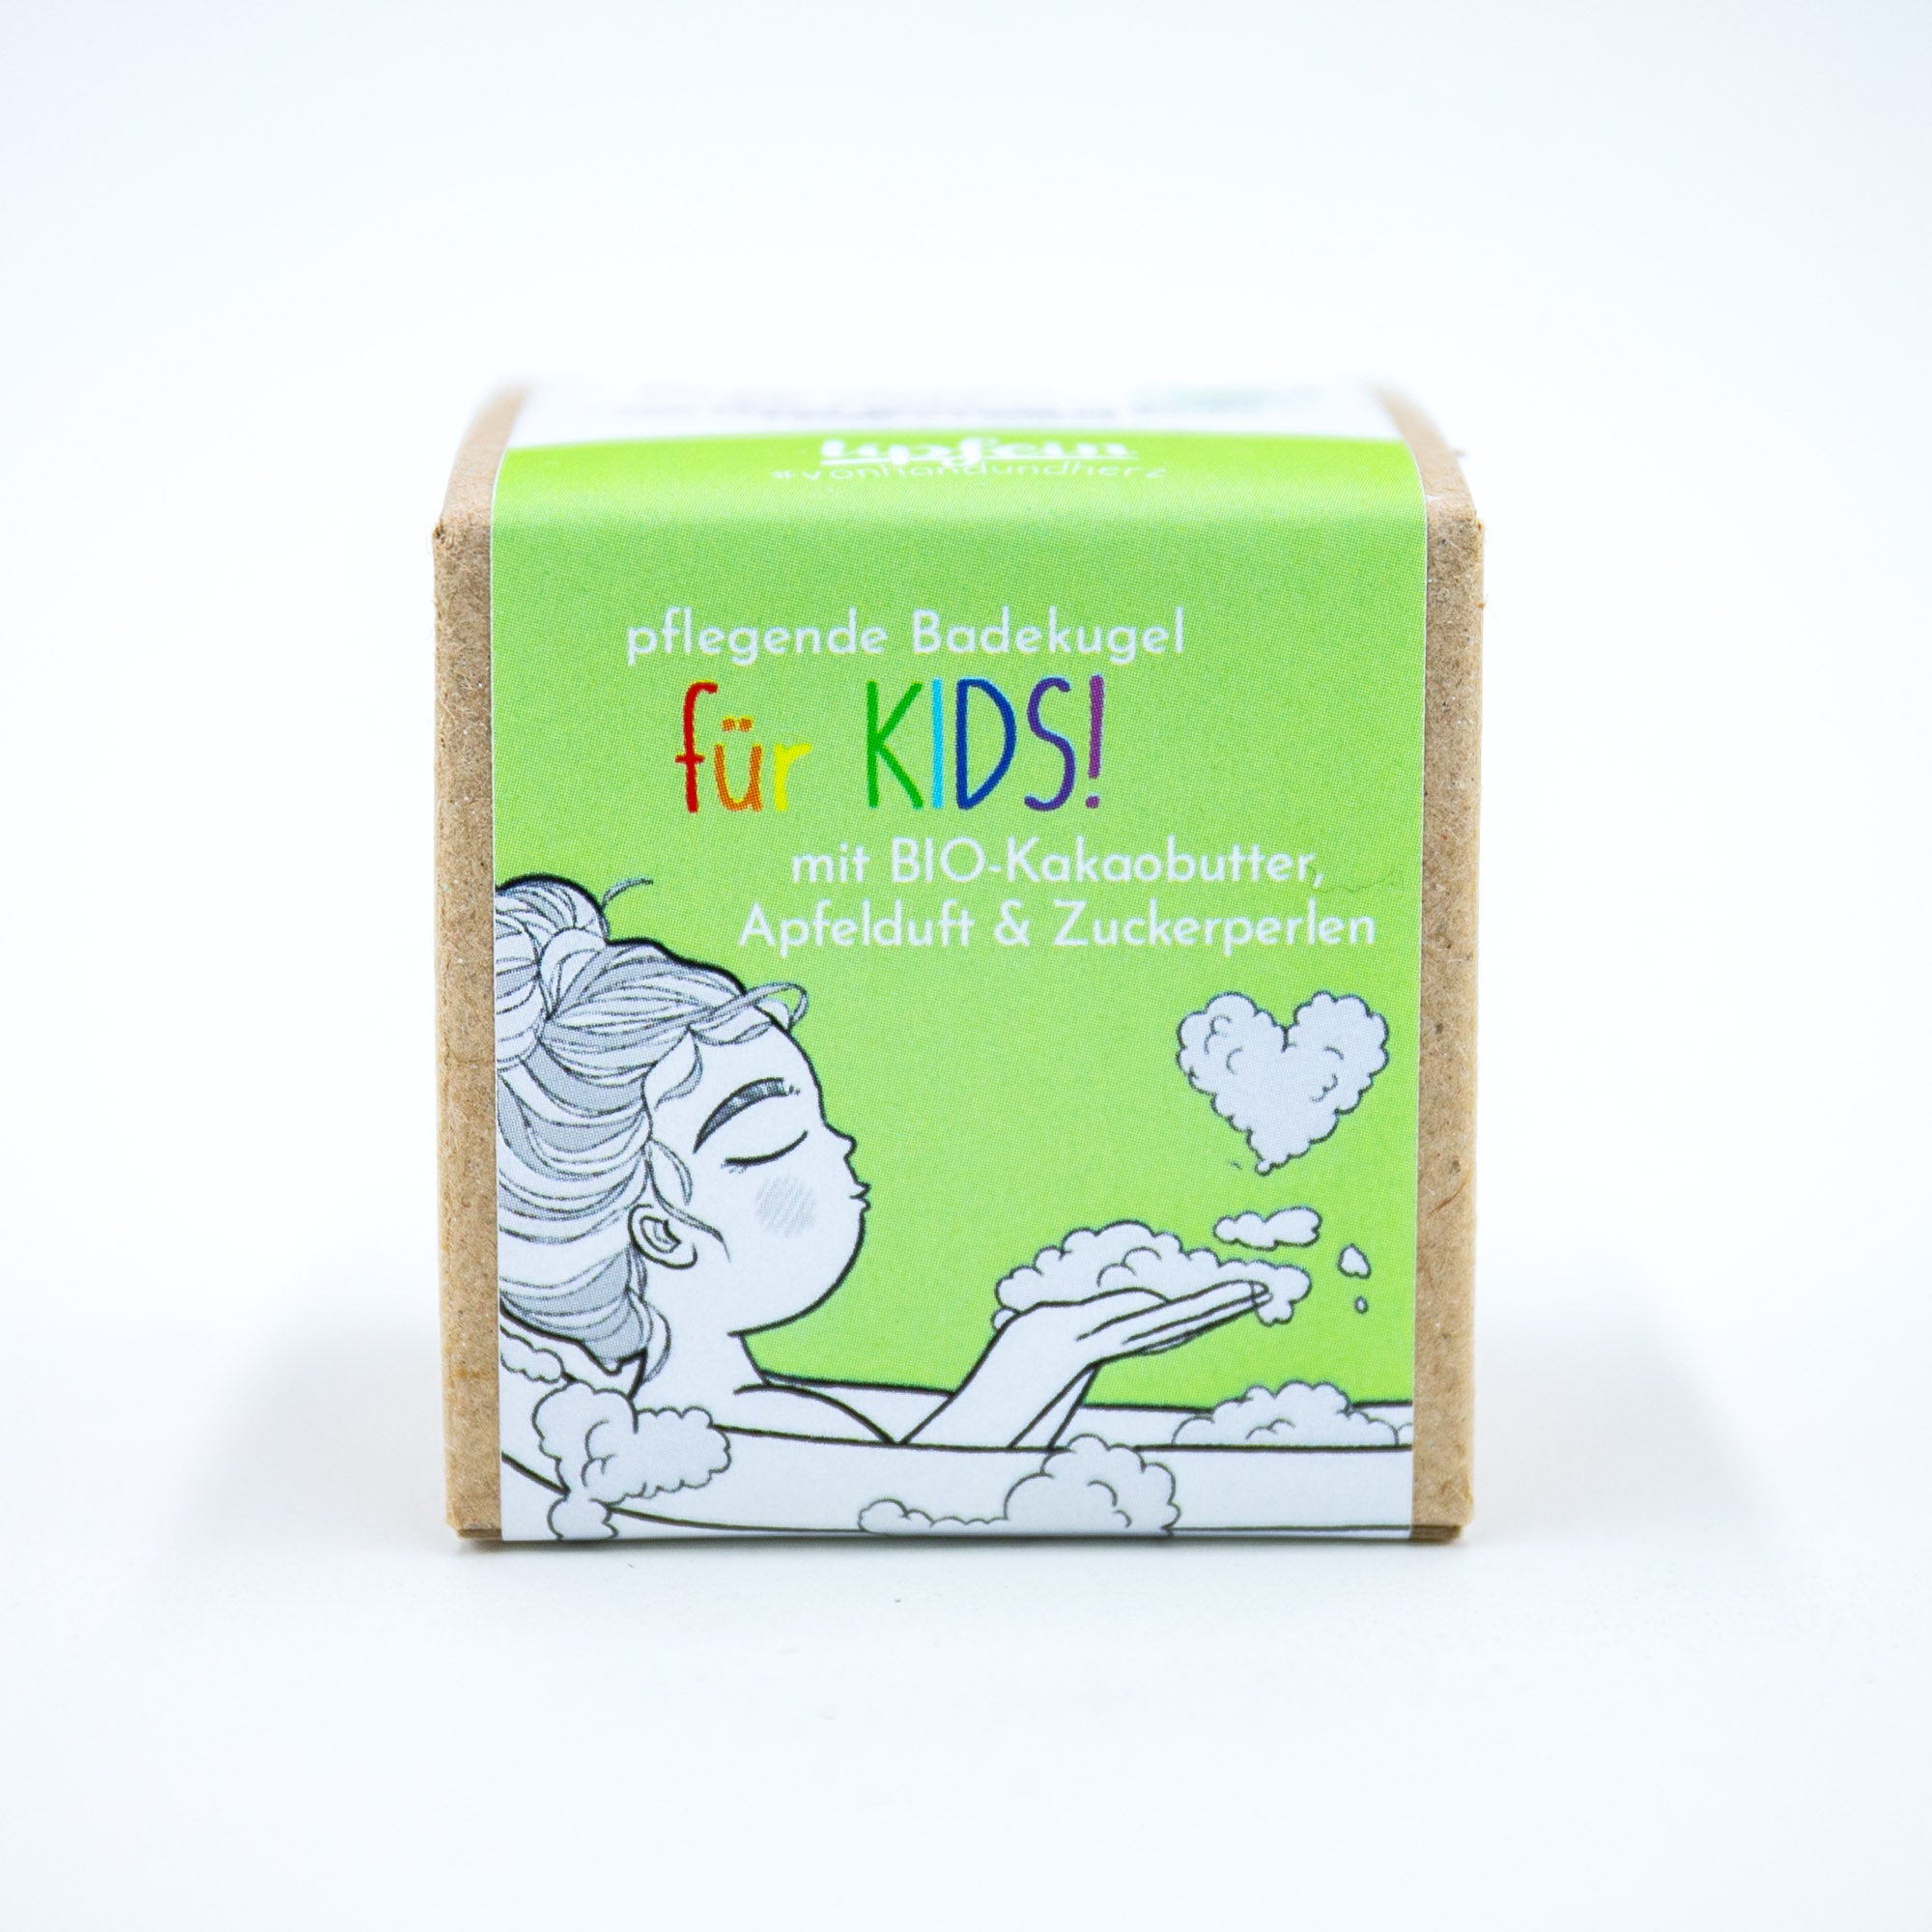 Lipfein Für KIDS! - Pflegende Badekugel mit Apfelduft und Zuckerperlen